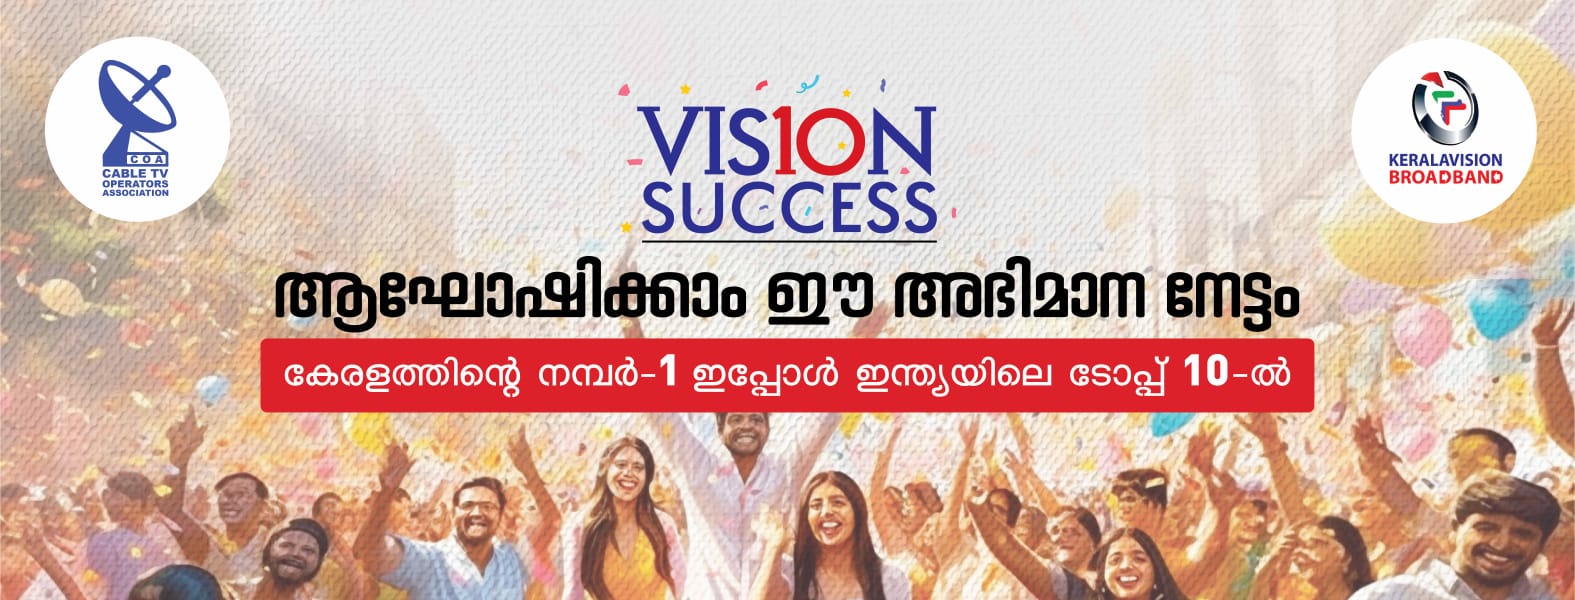 Kerala Vision at Indias Top 10 List